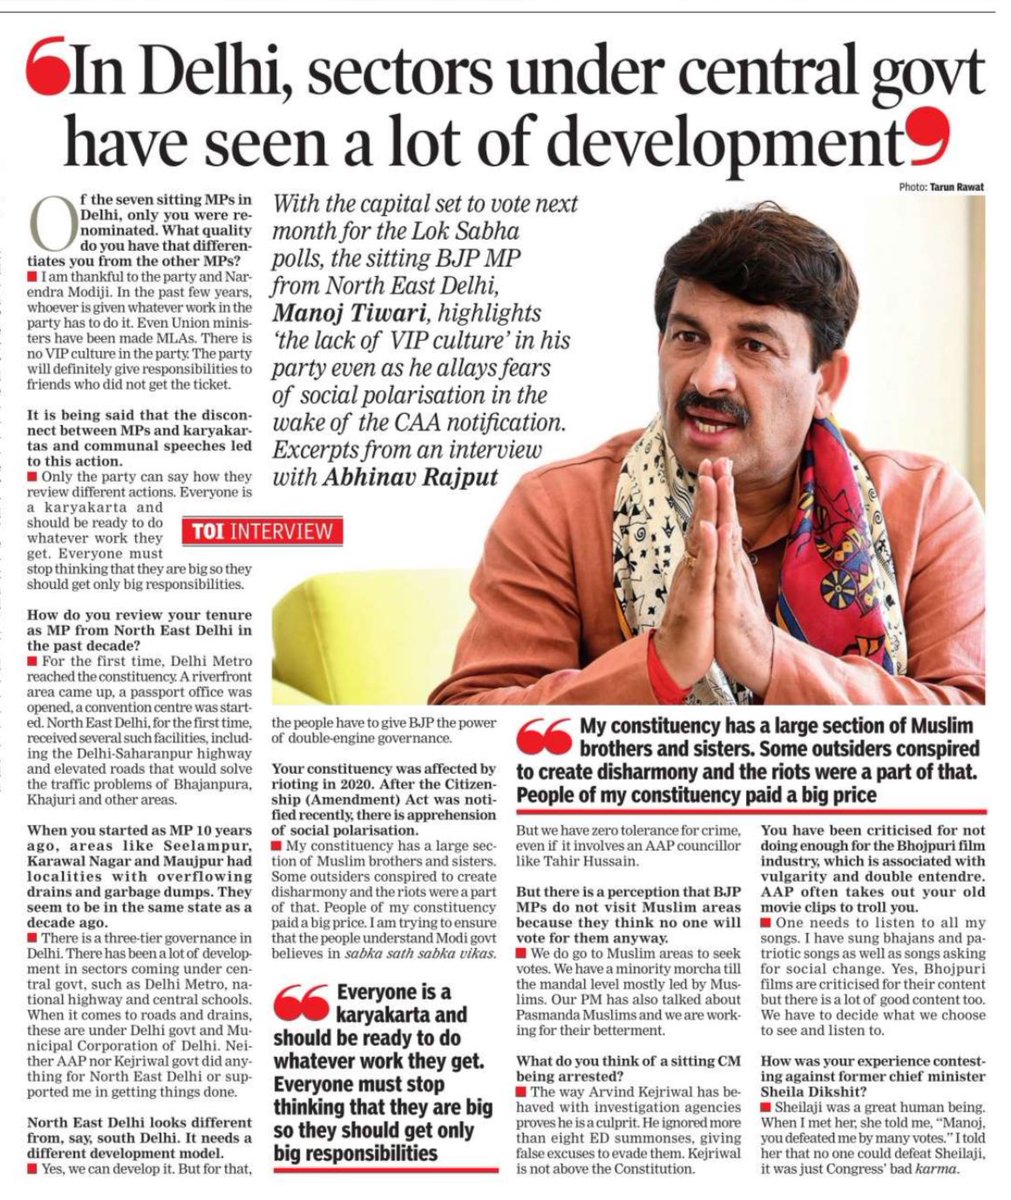 दिल्ली के जो सेक्टर केंद्र के अधीन वहां सबसे ज़्यादा विकास हुआ है श्री @ManojTiwariMP जी।